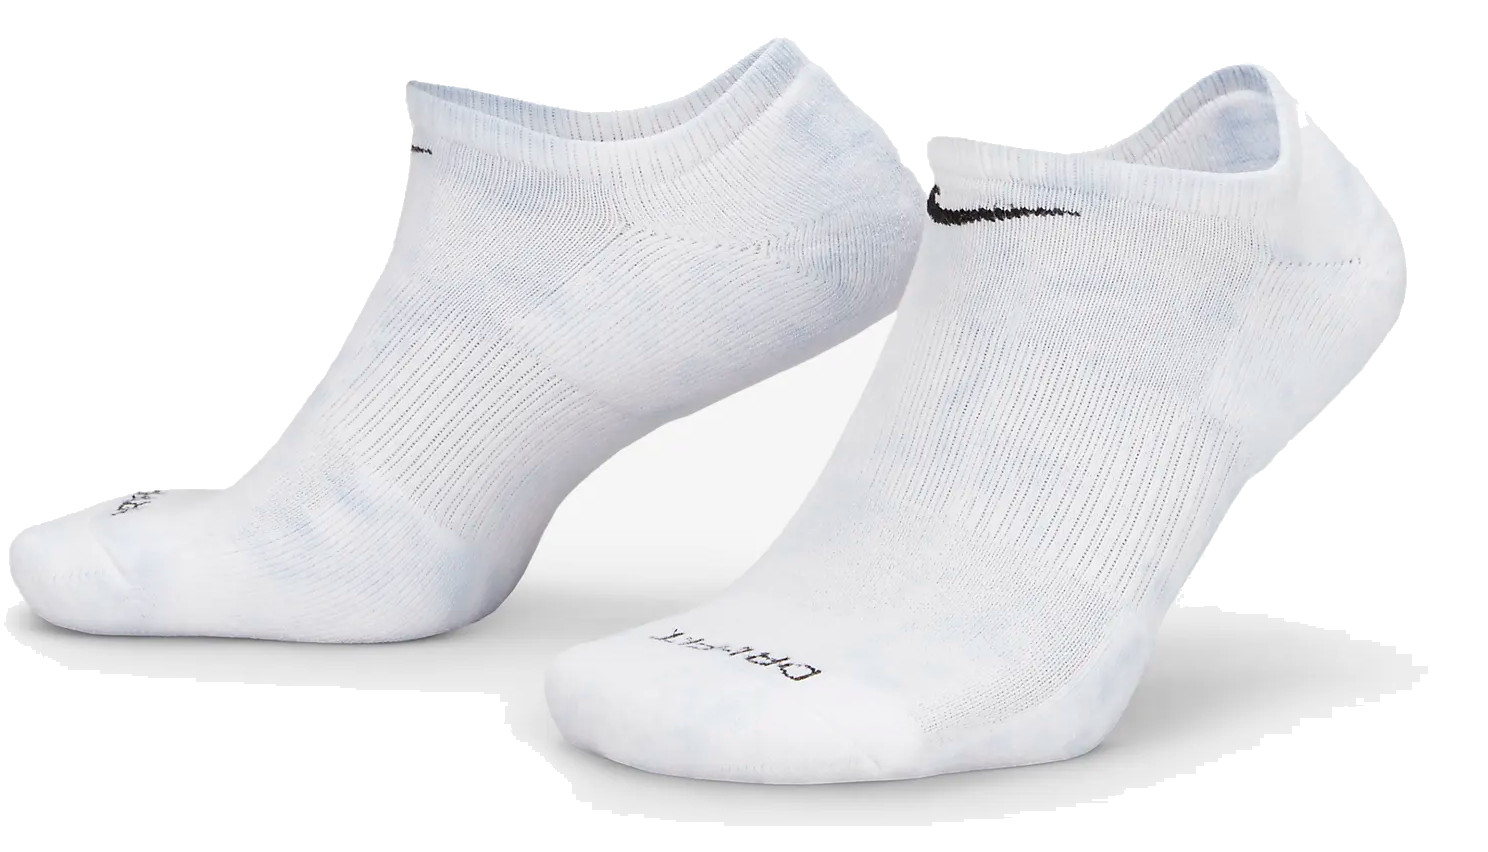 Κάλτσες Nike Everyday Plus 3P